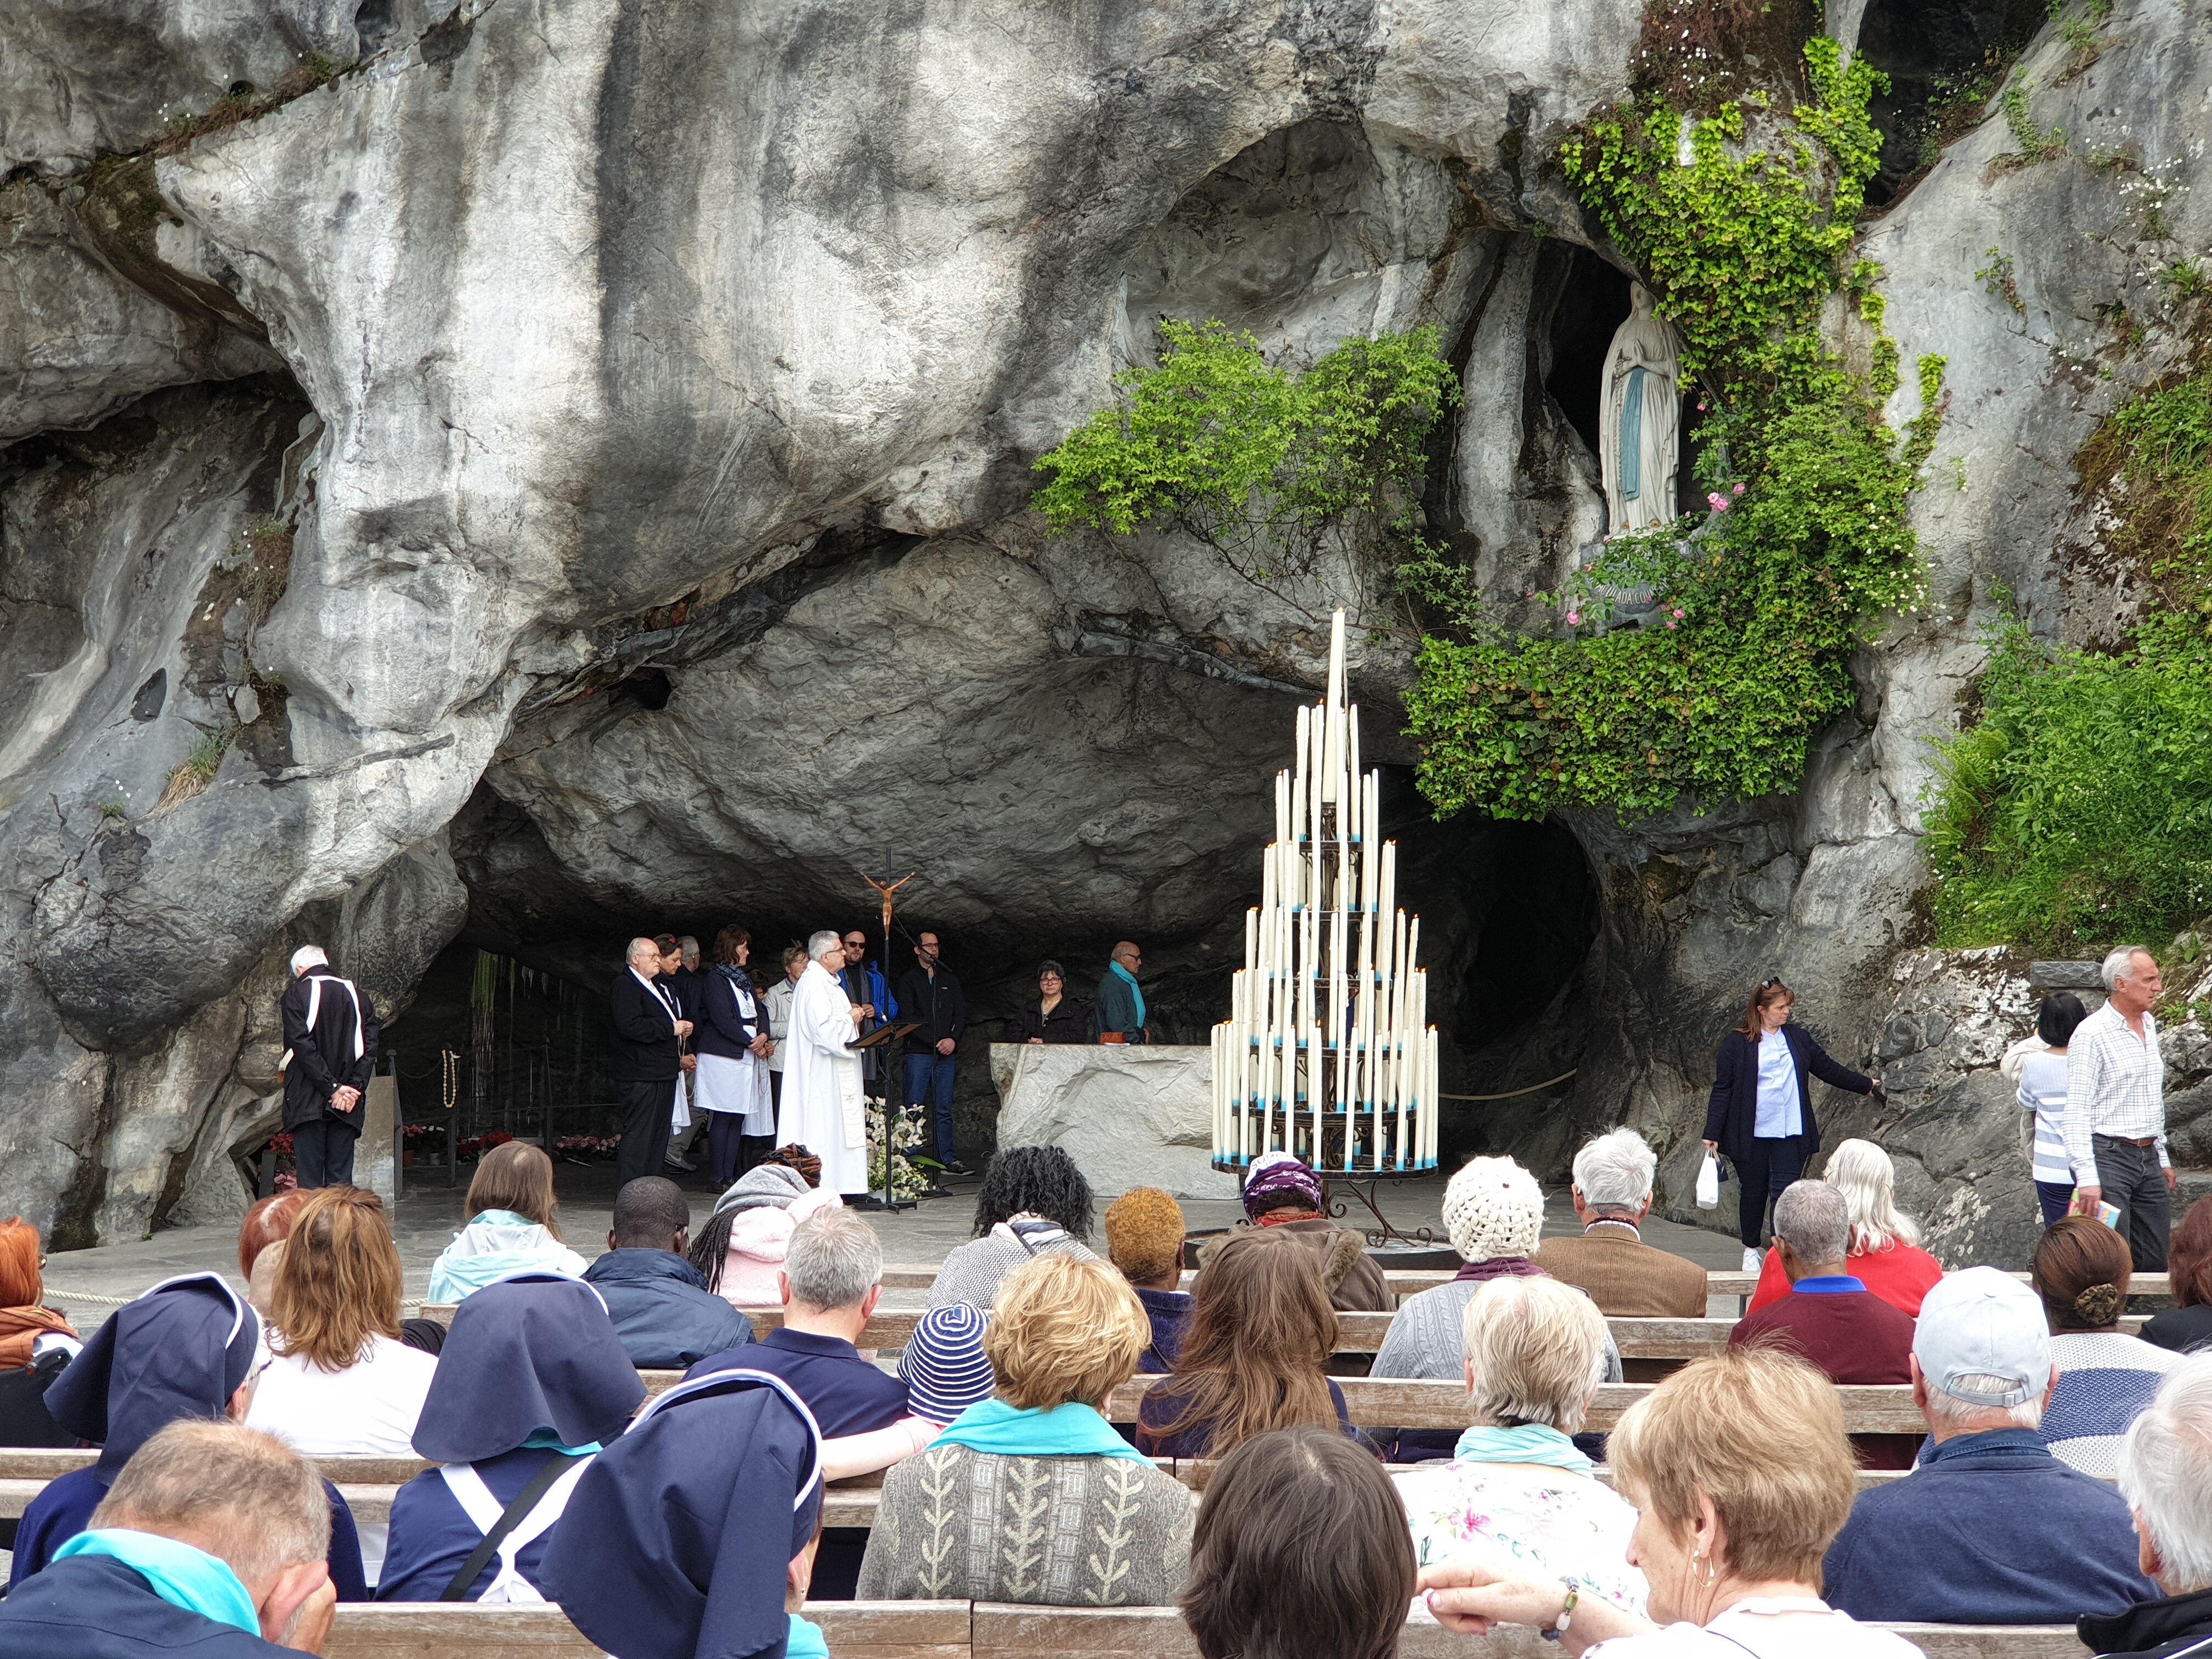 Pellegrinaggio a Lourdes da Palermo 2020: